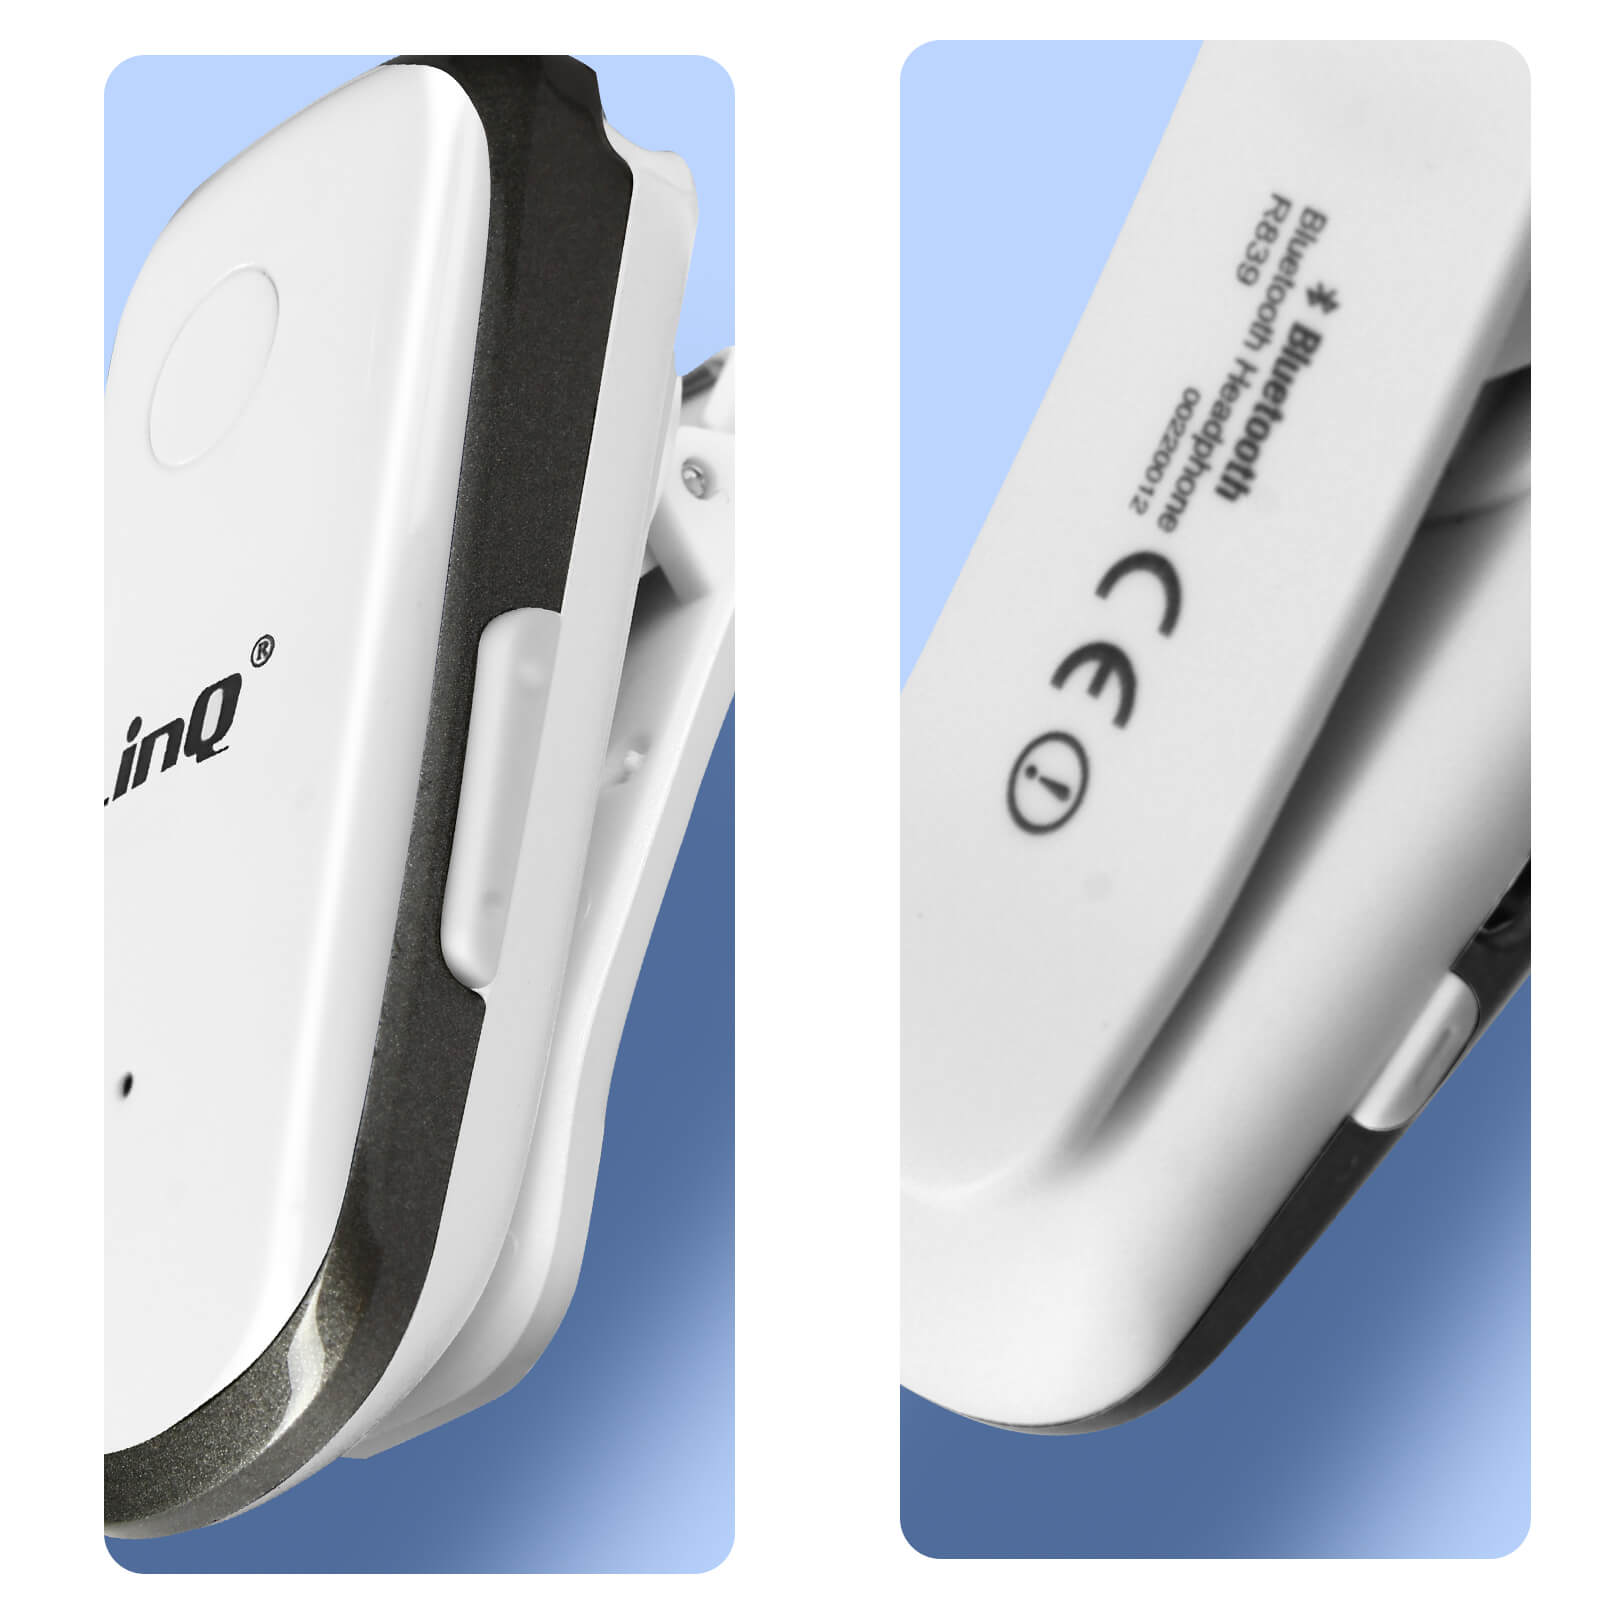 Oreillette Bluetooth Fonction Vibreur et Annonce Vocale avec Câble